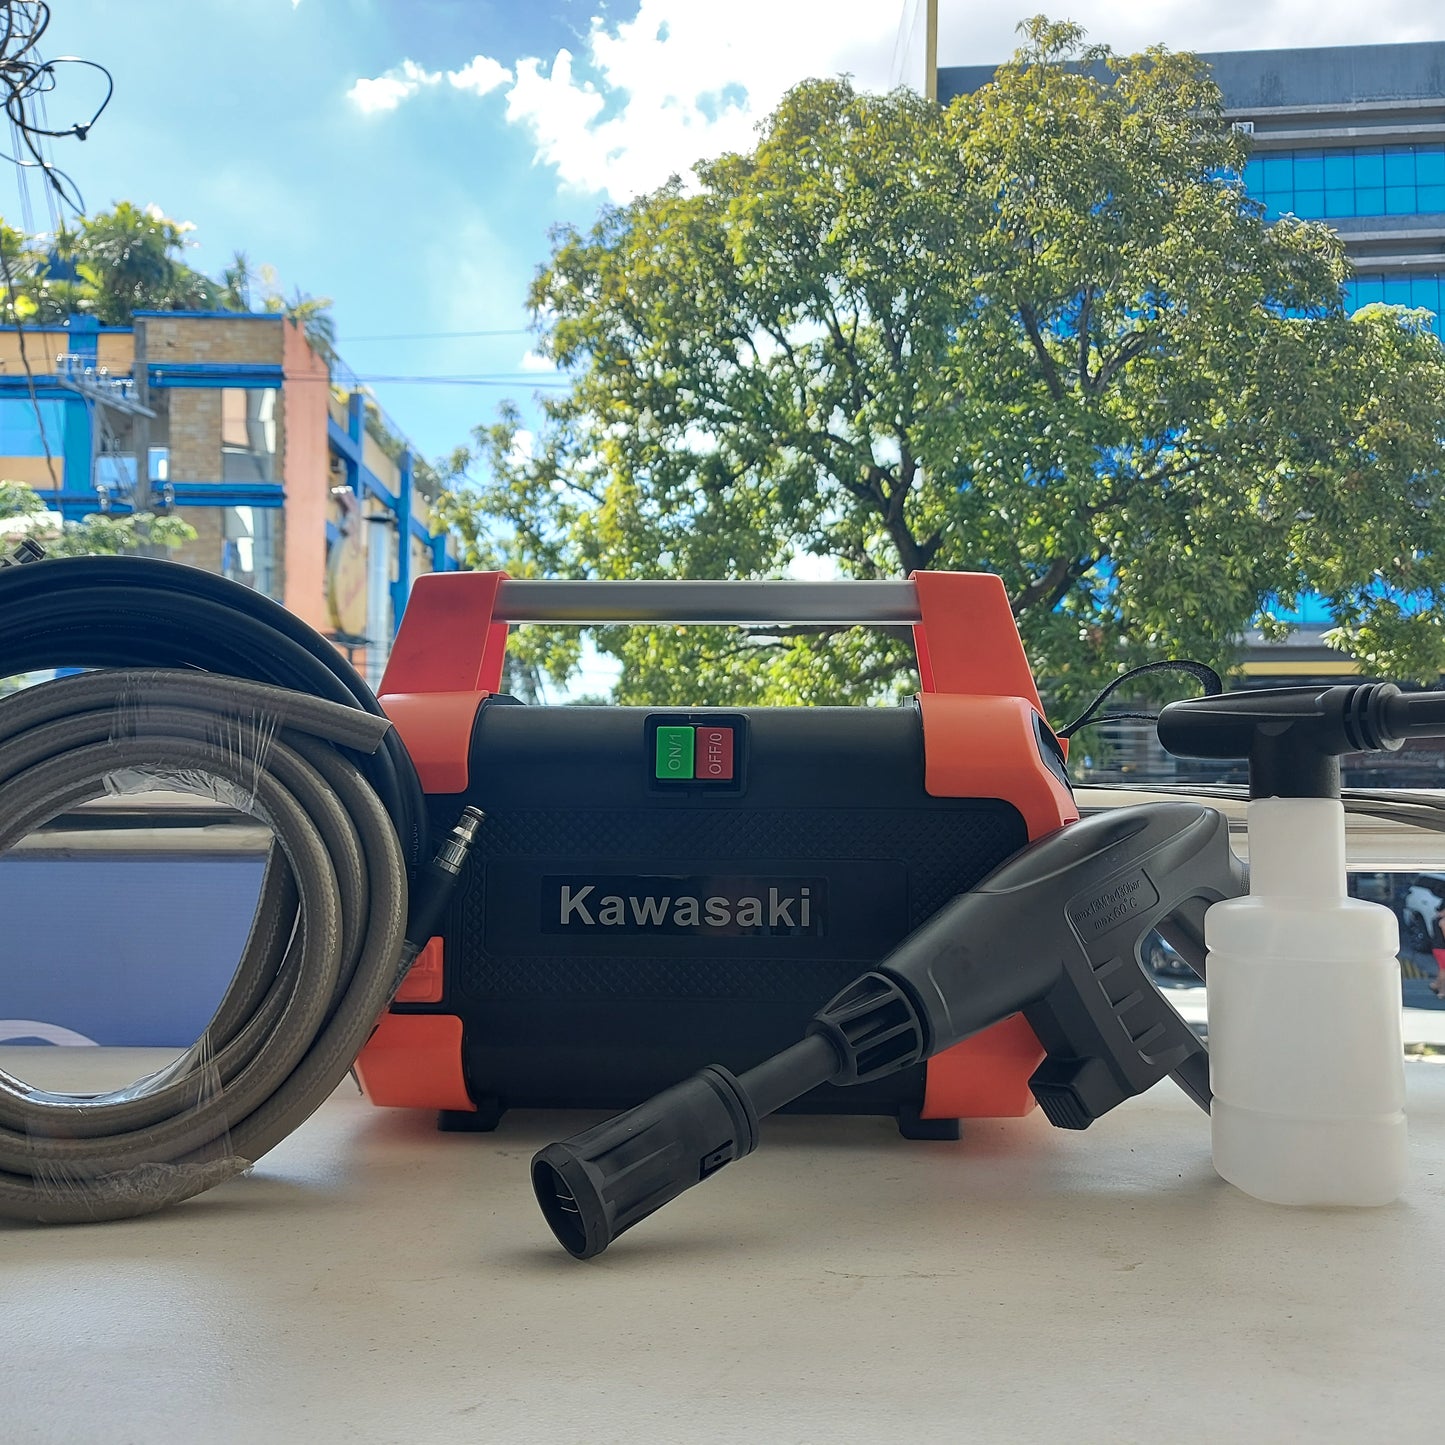 Kawasaki Pressure Washer HPB 302